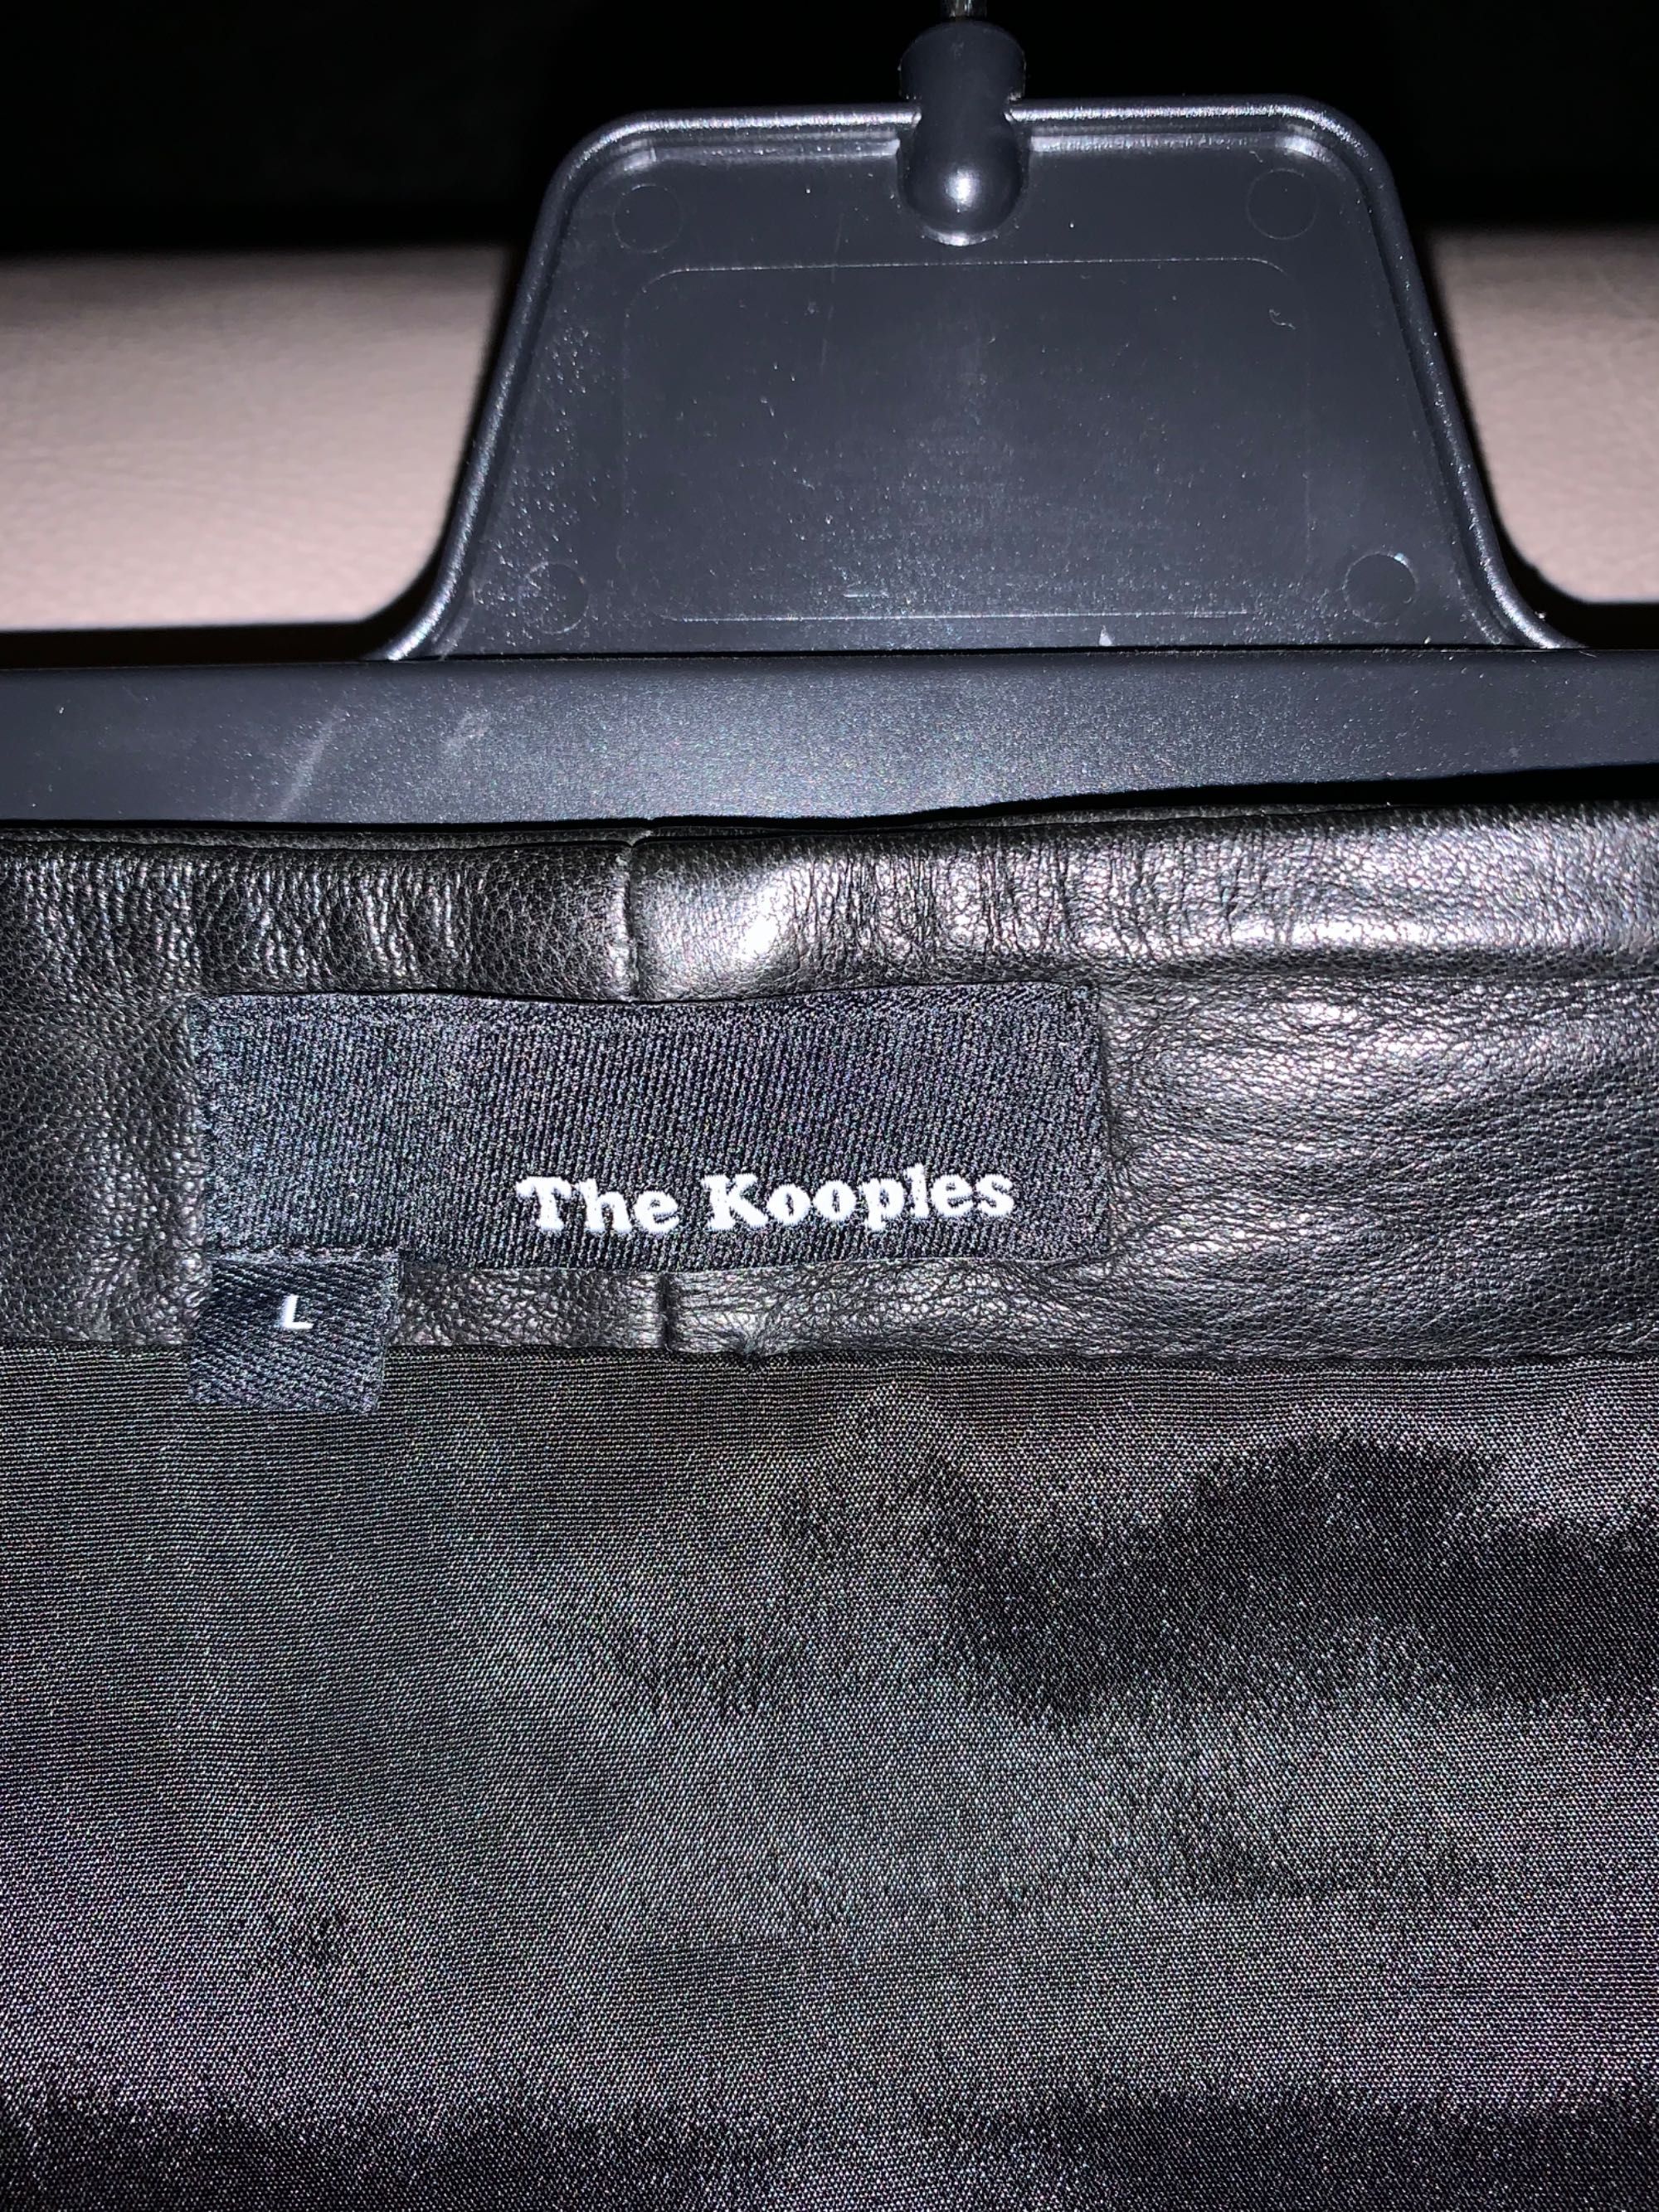 Saia de pele da marca Kooples